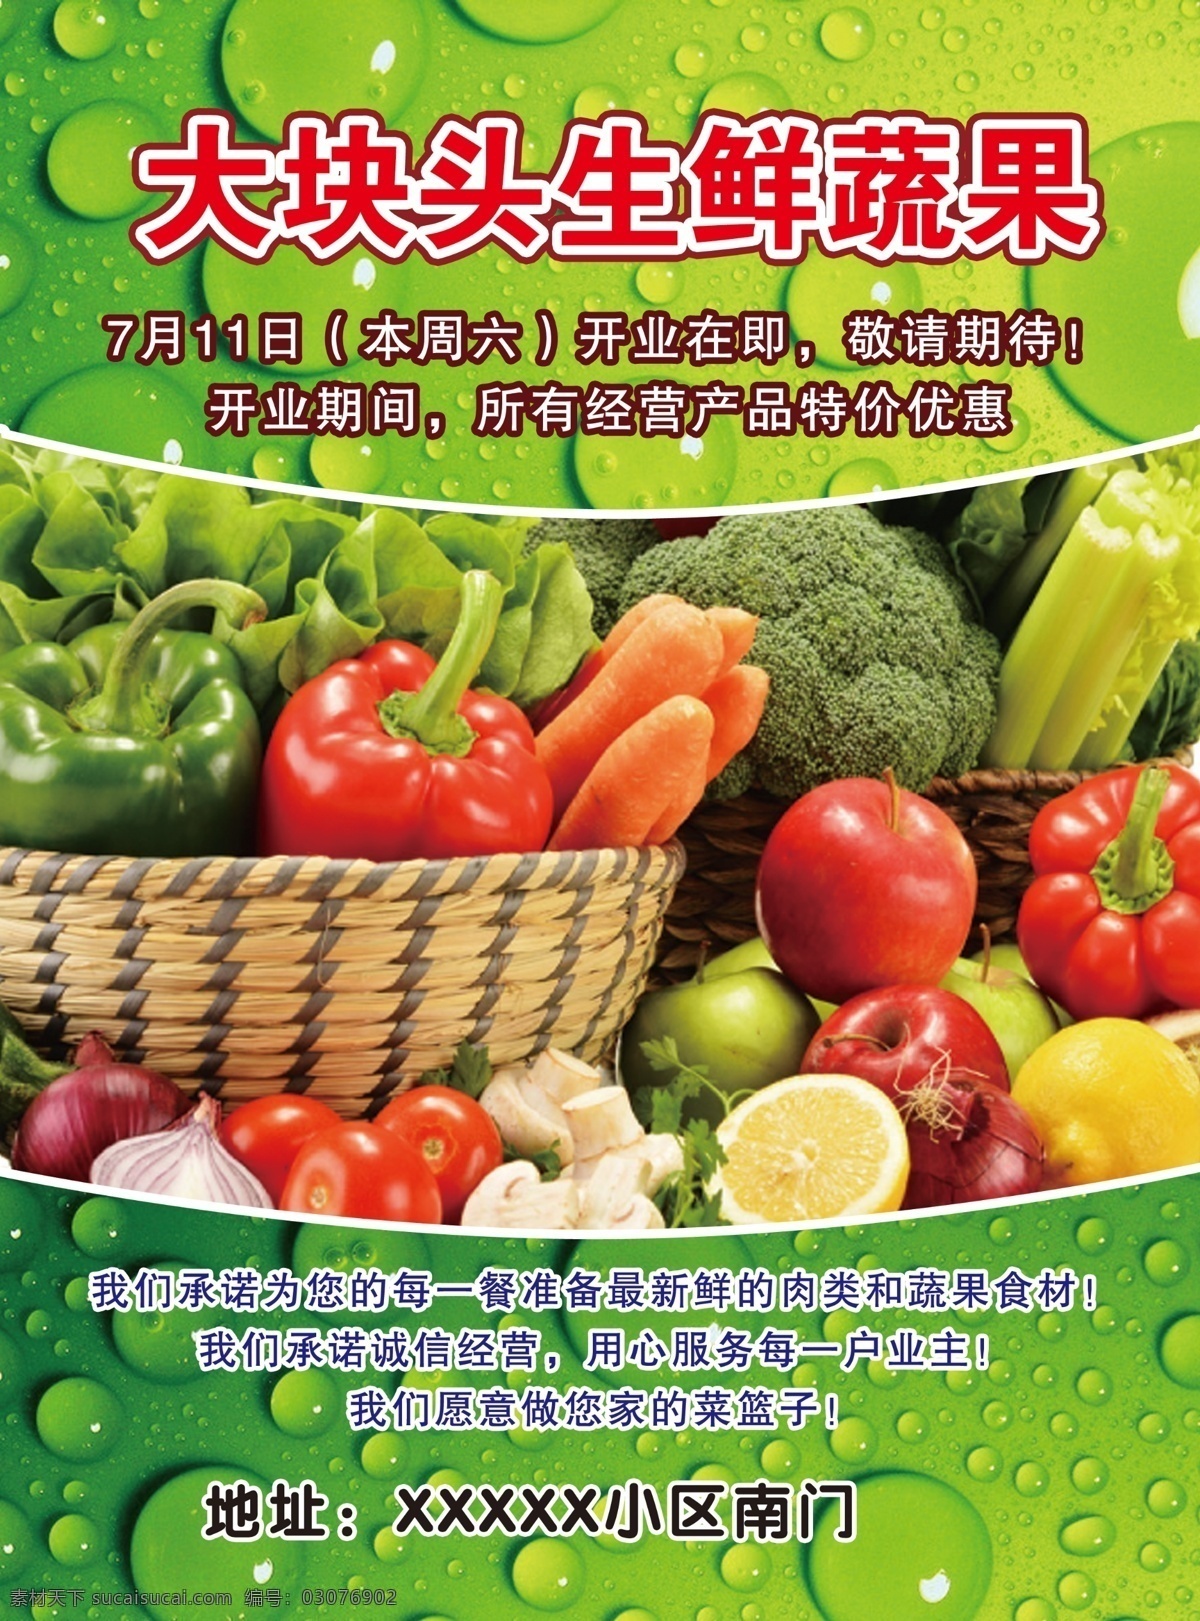 水果蔬菜海报 水果蔬菜广告 水果 蔬菜 水果蔬菜展板 展板 绿色